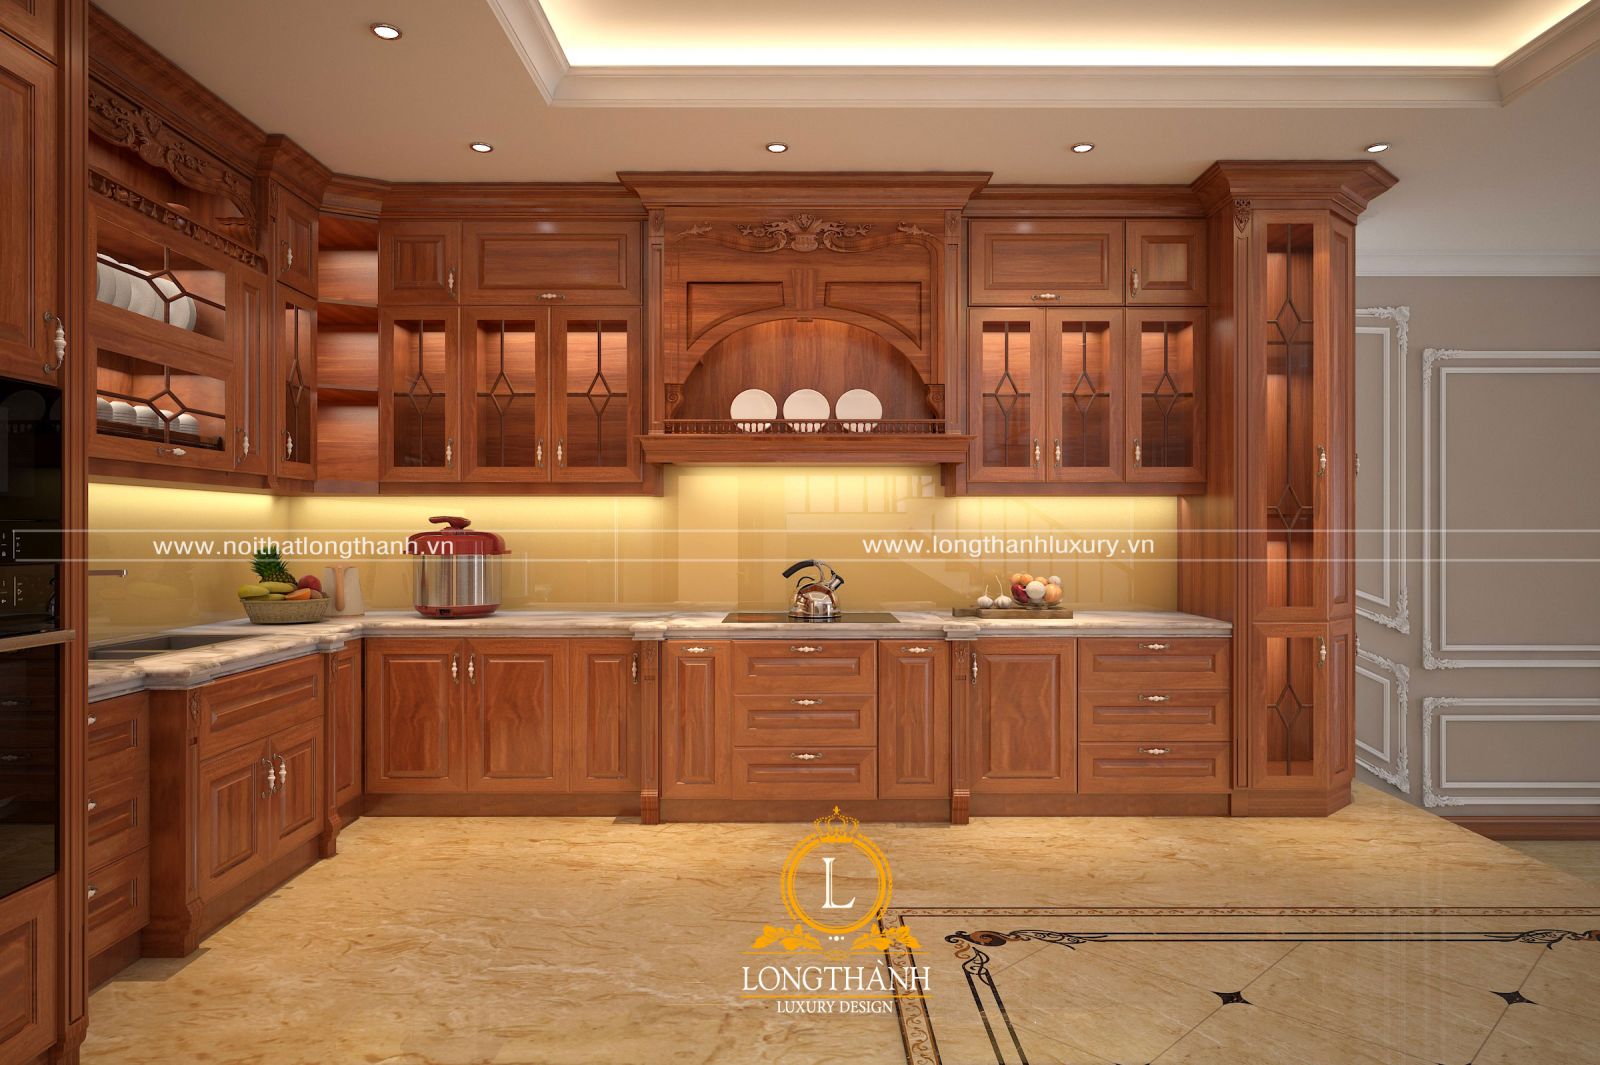 Mẫu tủ bếp gỗ gõ đỏ đẹp được thiết kế theo phong cách tân cổ điển